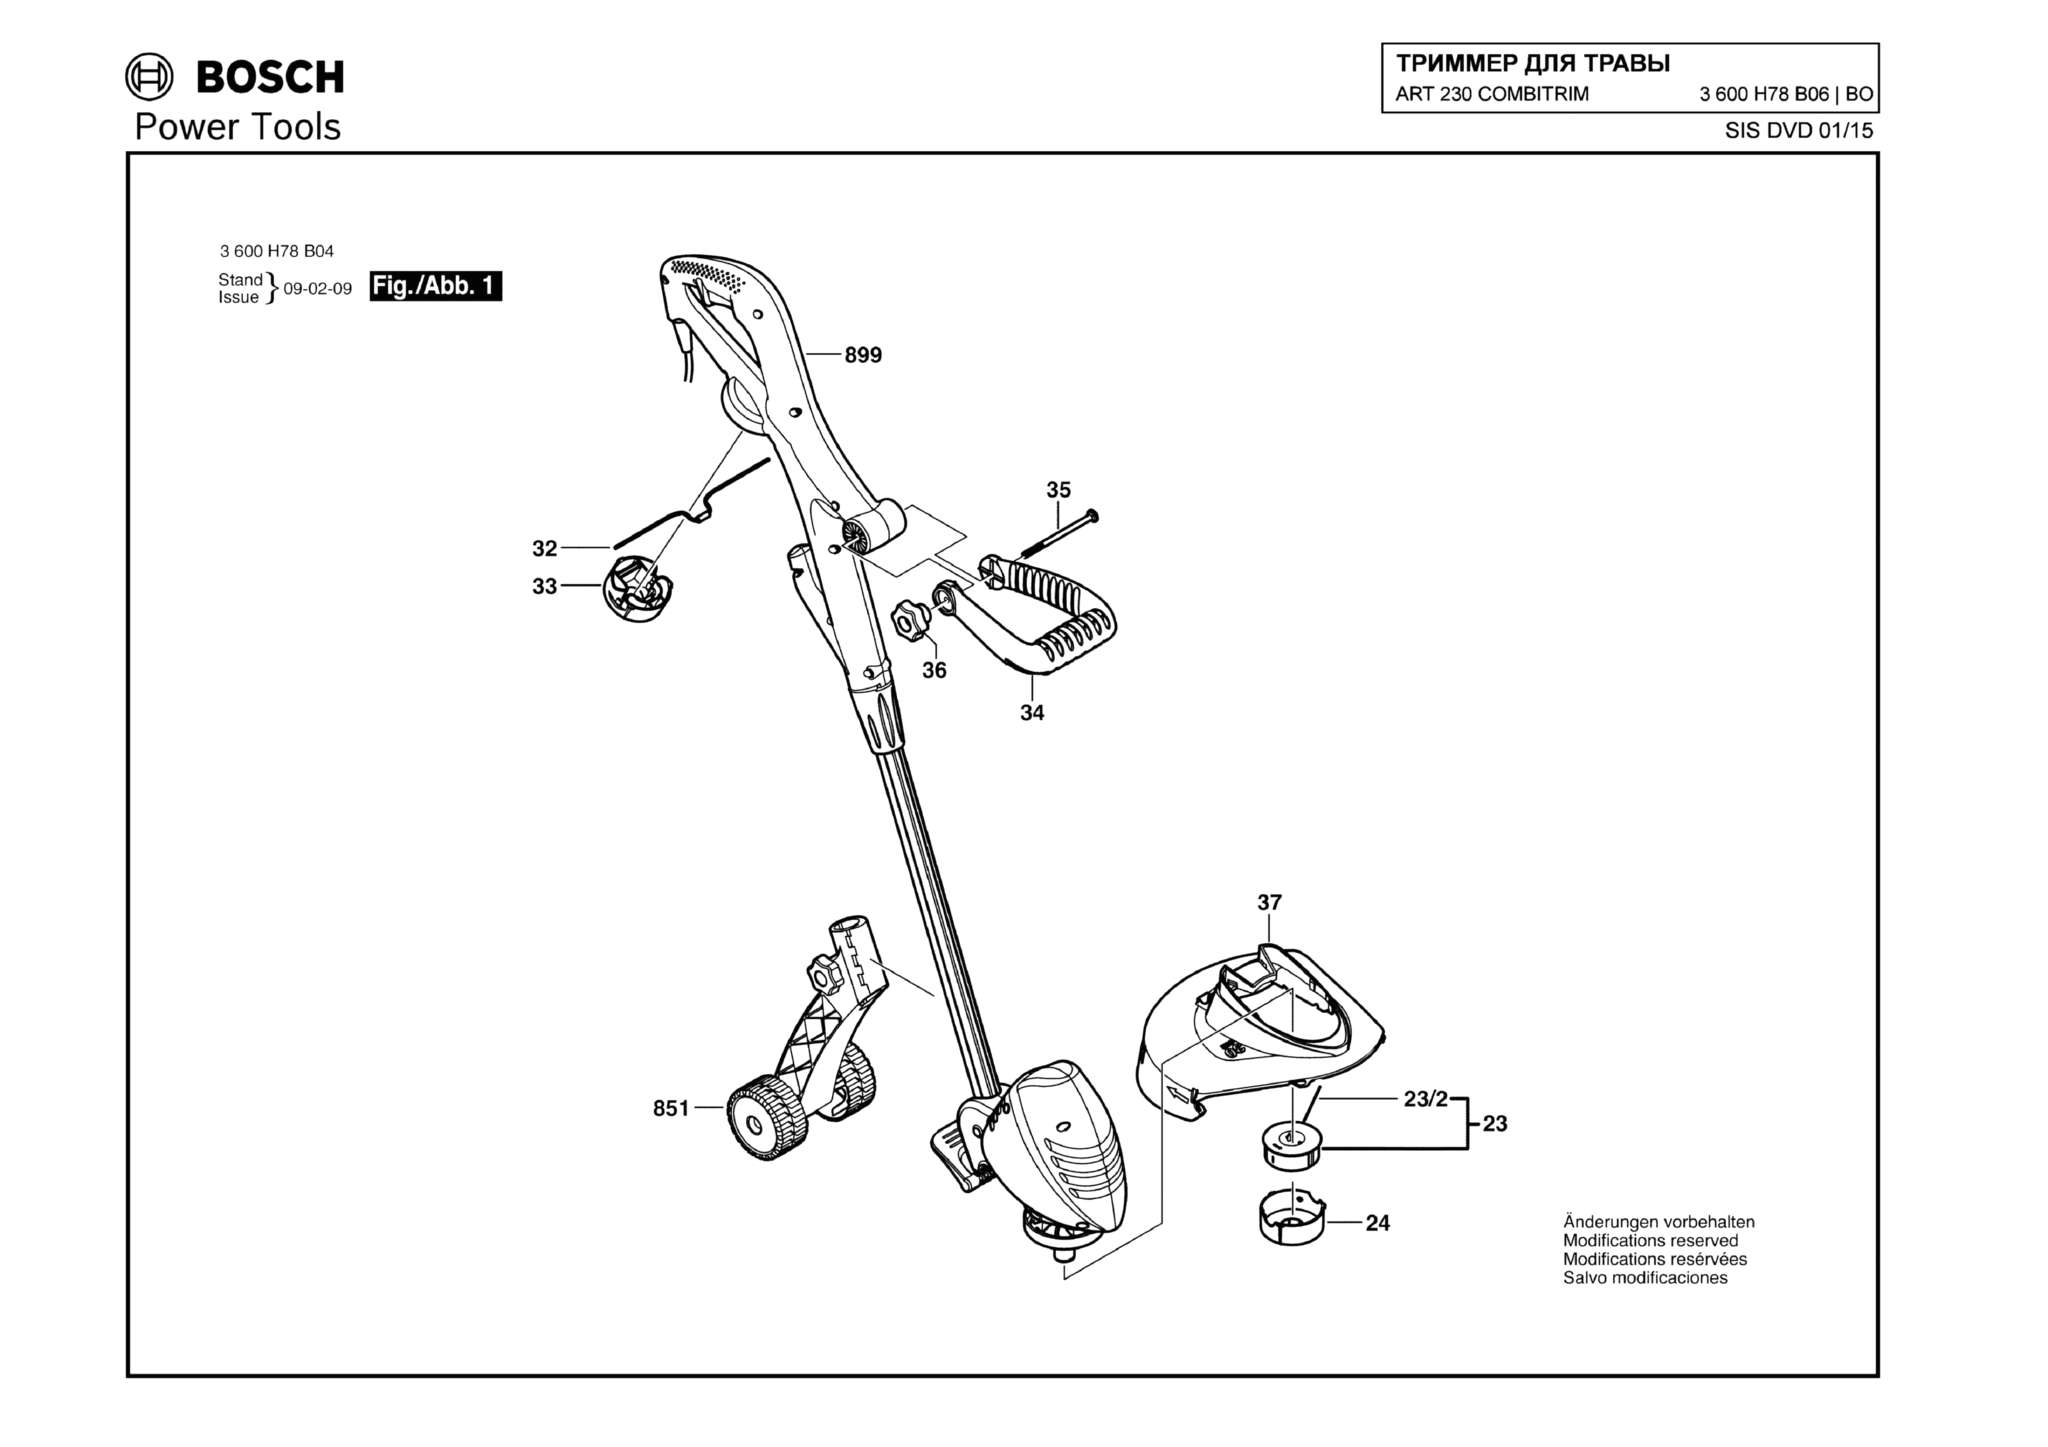 Запчасти, схема и деталировка Bosch ART 230 COMBITRIM (ТИП 3600H78B06)